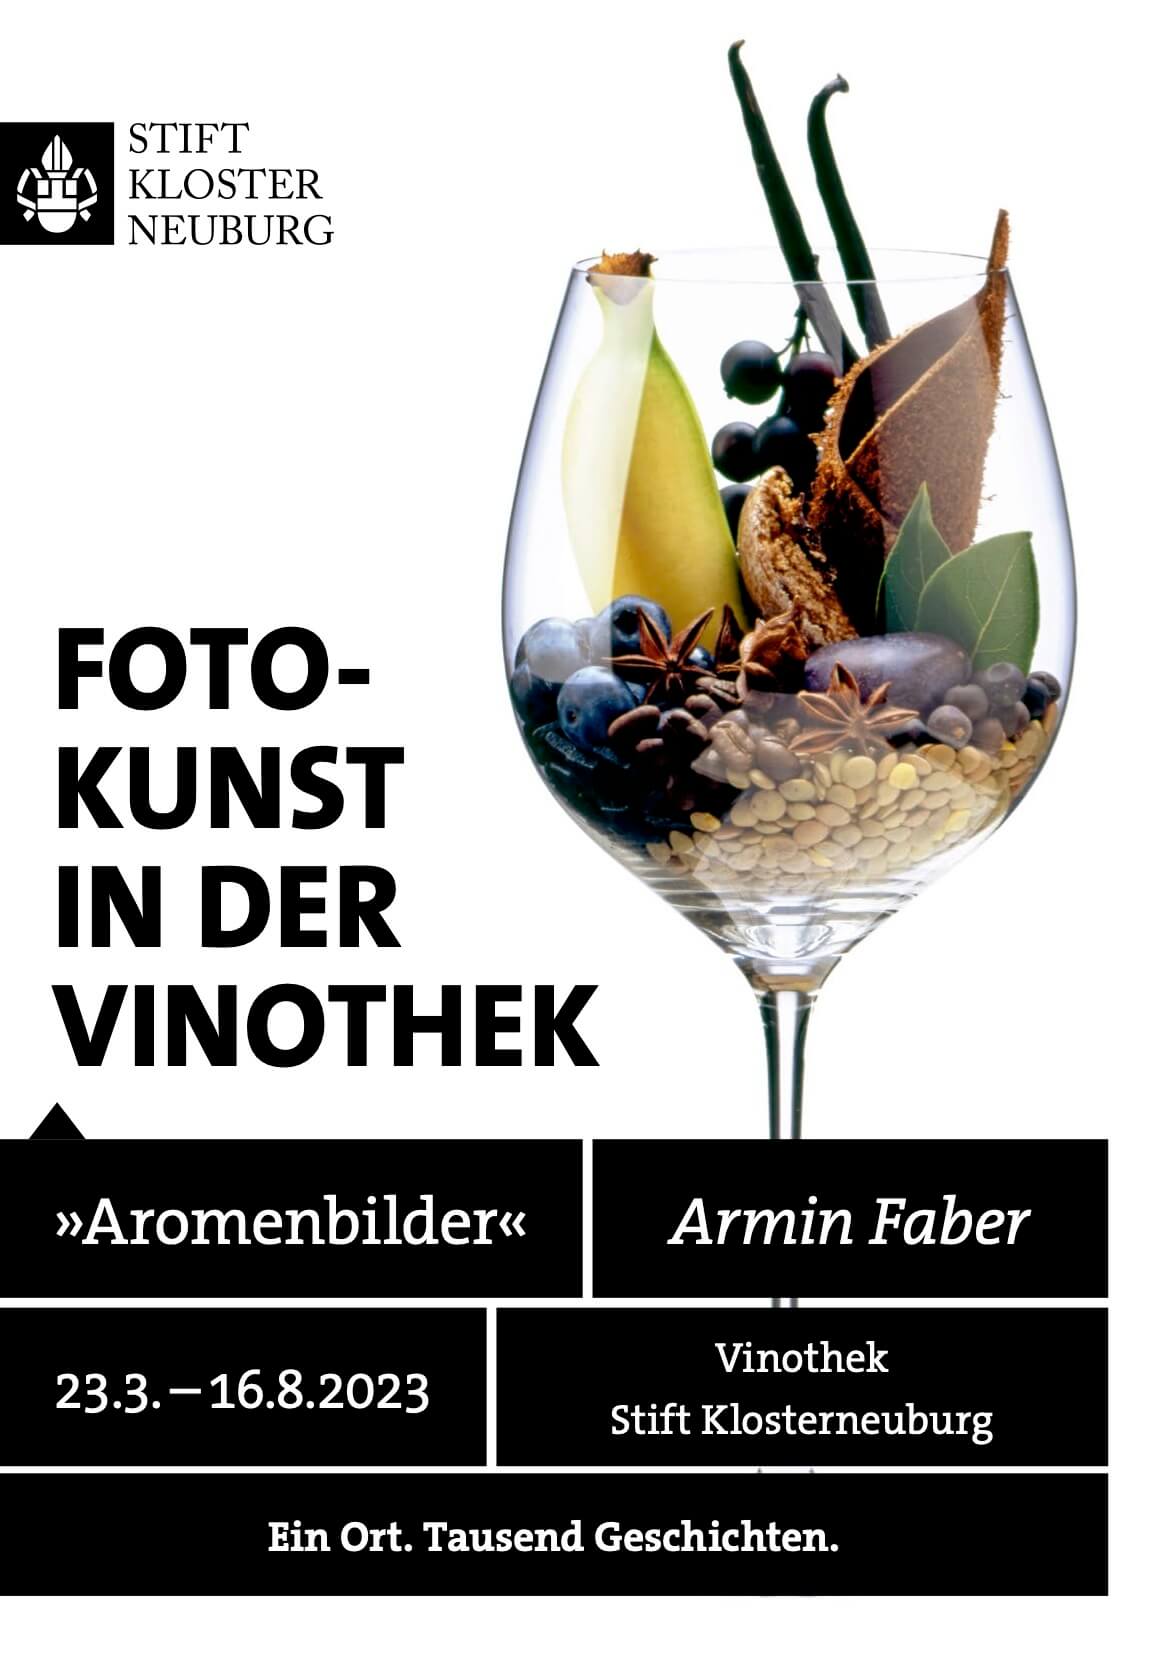 Einladung zur Fotoausstellung von Armin Faber